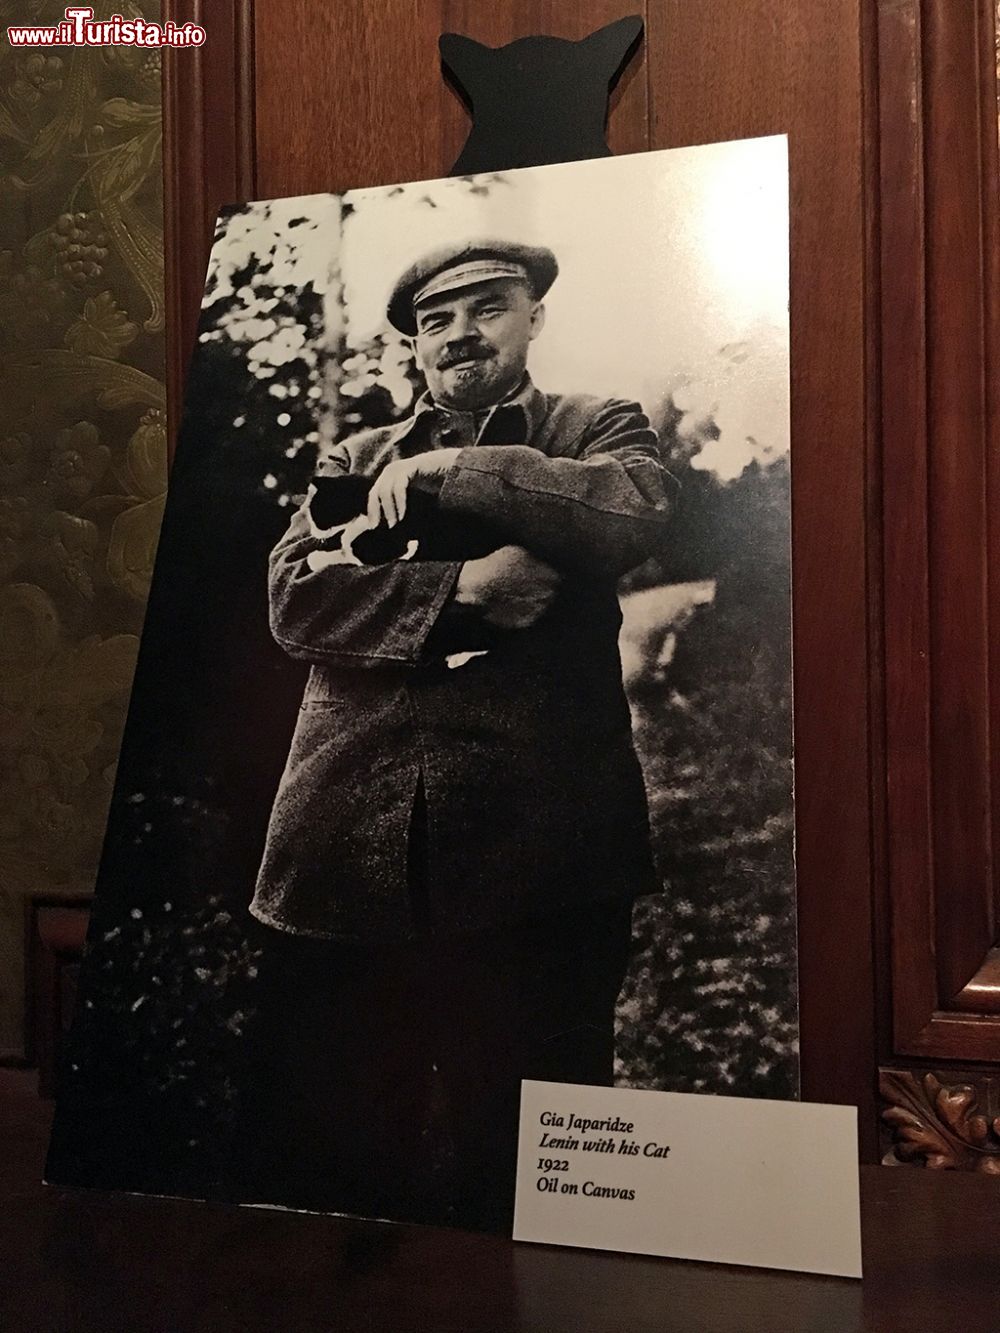 Immagine Una fotografia che ritrae Lenin con il suo gatto esposta al Museo dei Gatti di Amsterdam © Andrea Mazza